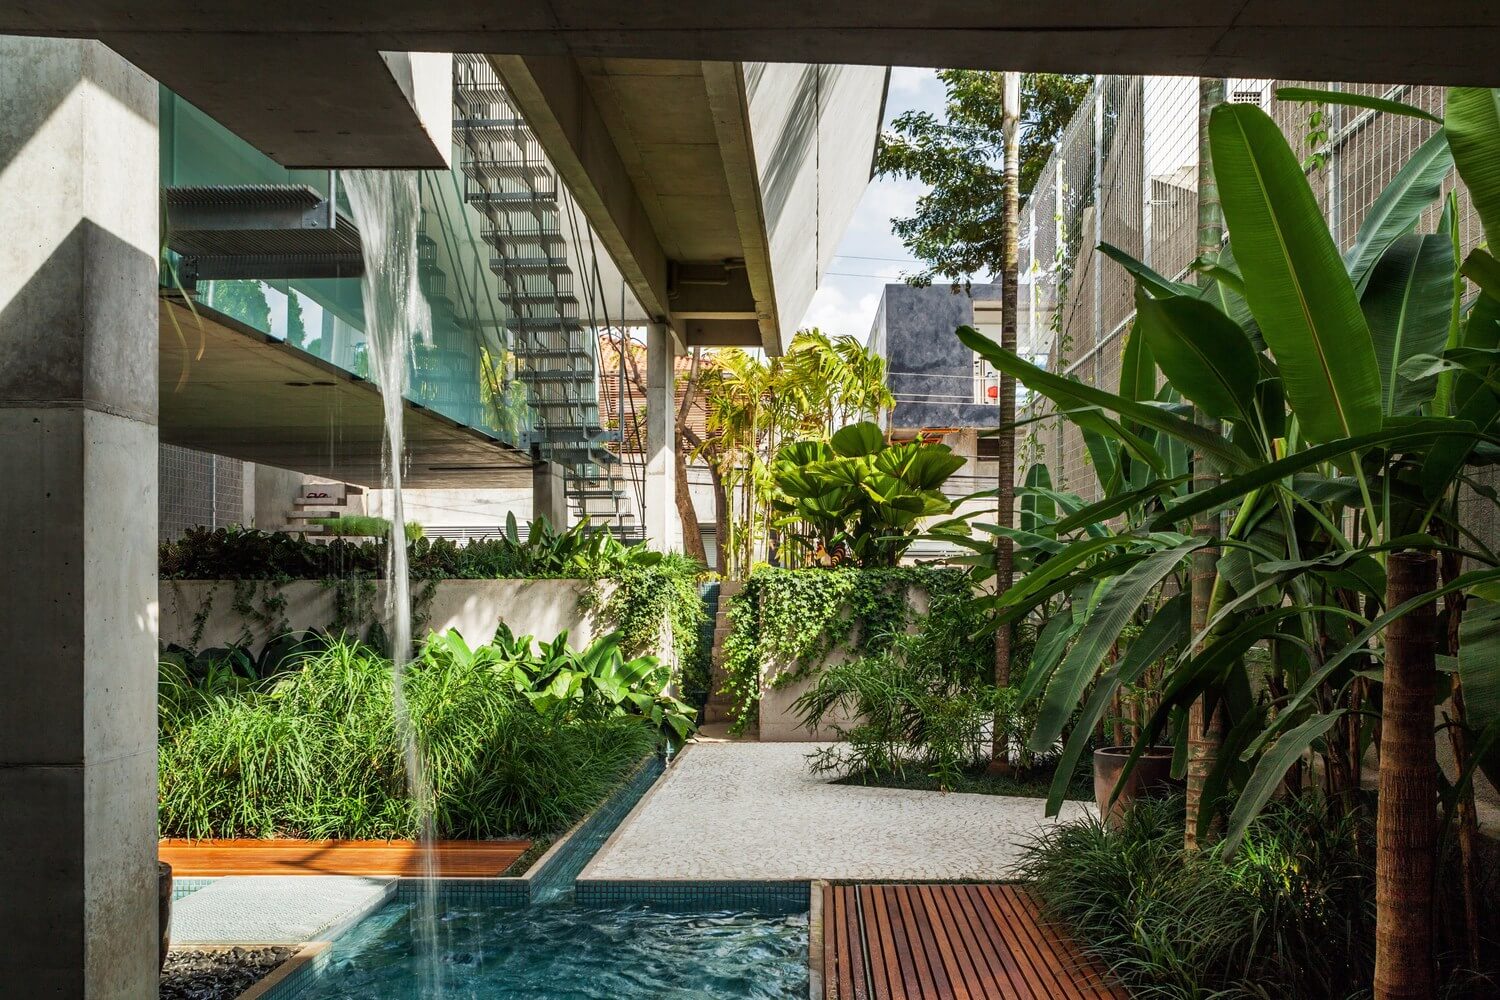 Casa Brutalista | Casa de fim de semana em São Paulo por SPBR Arquitetos